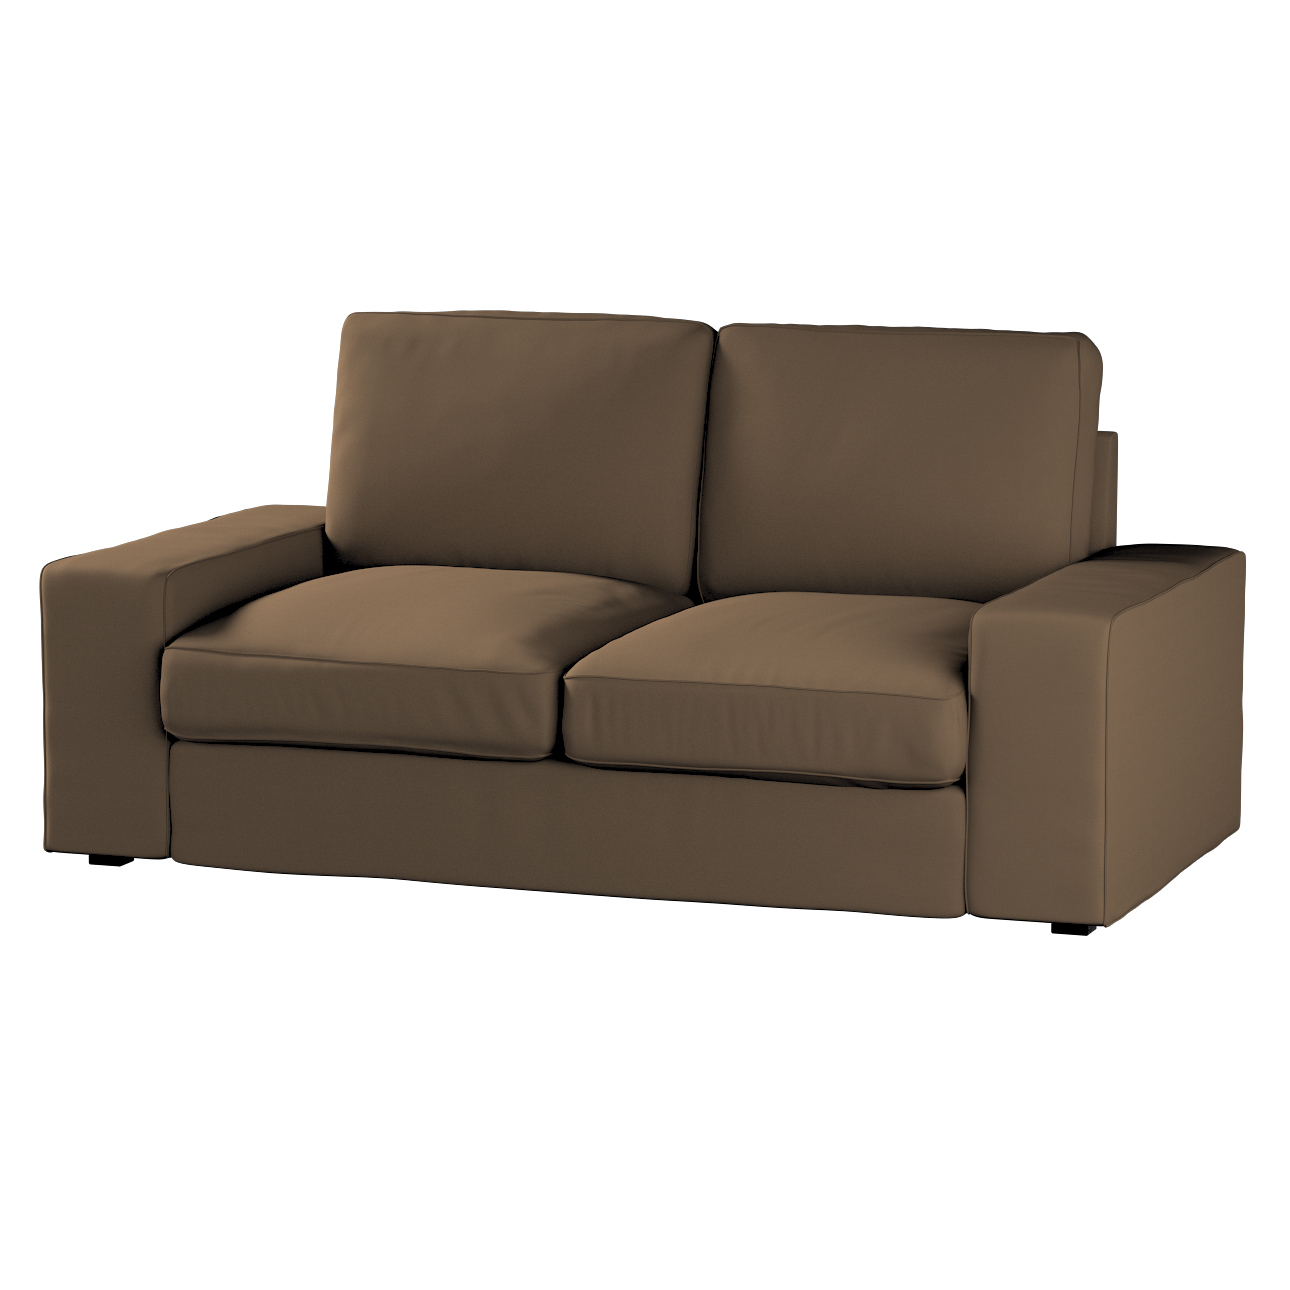 Bezug für Kivik 2-Sitzer Sofa, mocca, Bezug für Sofa Kivik 2-Sitzer, Cotton günstig online kaufen